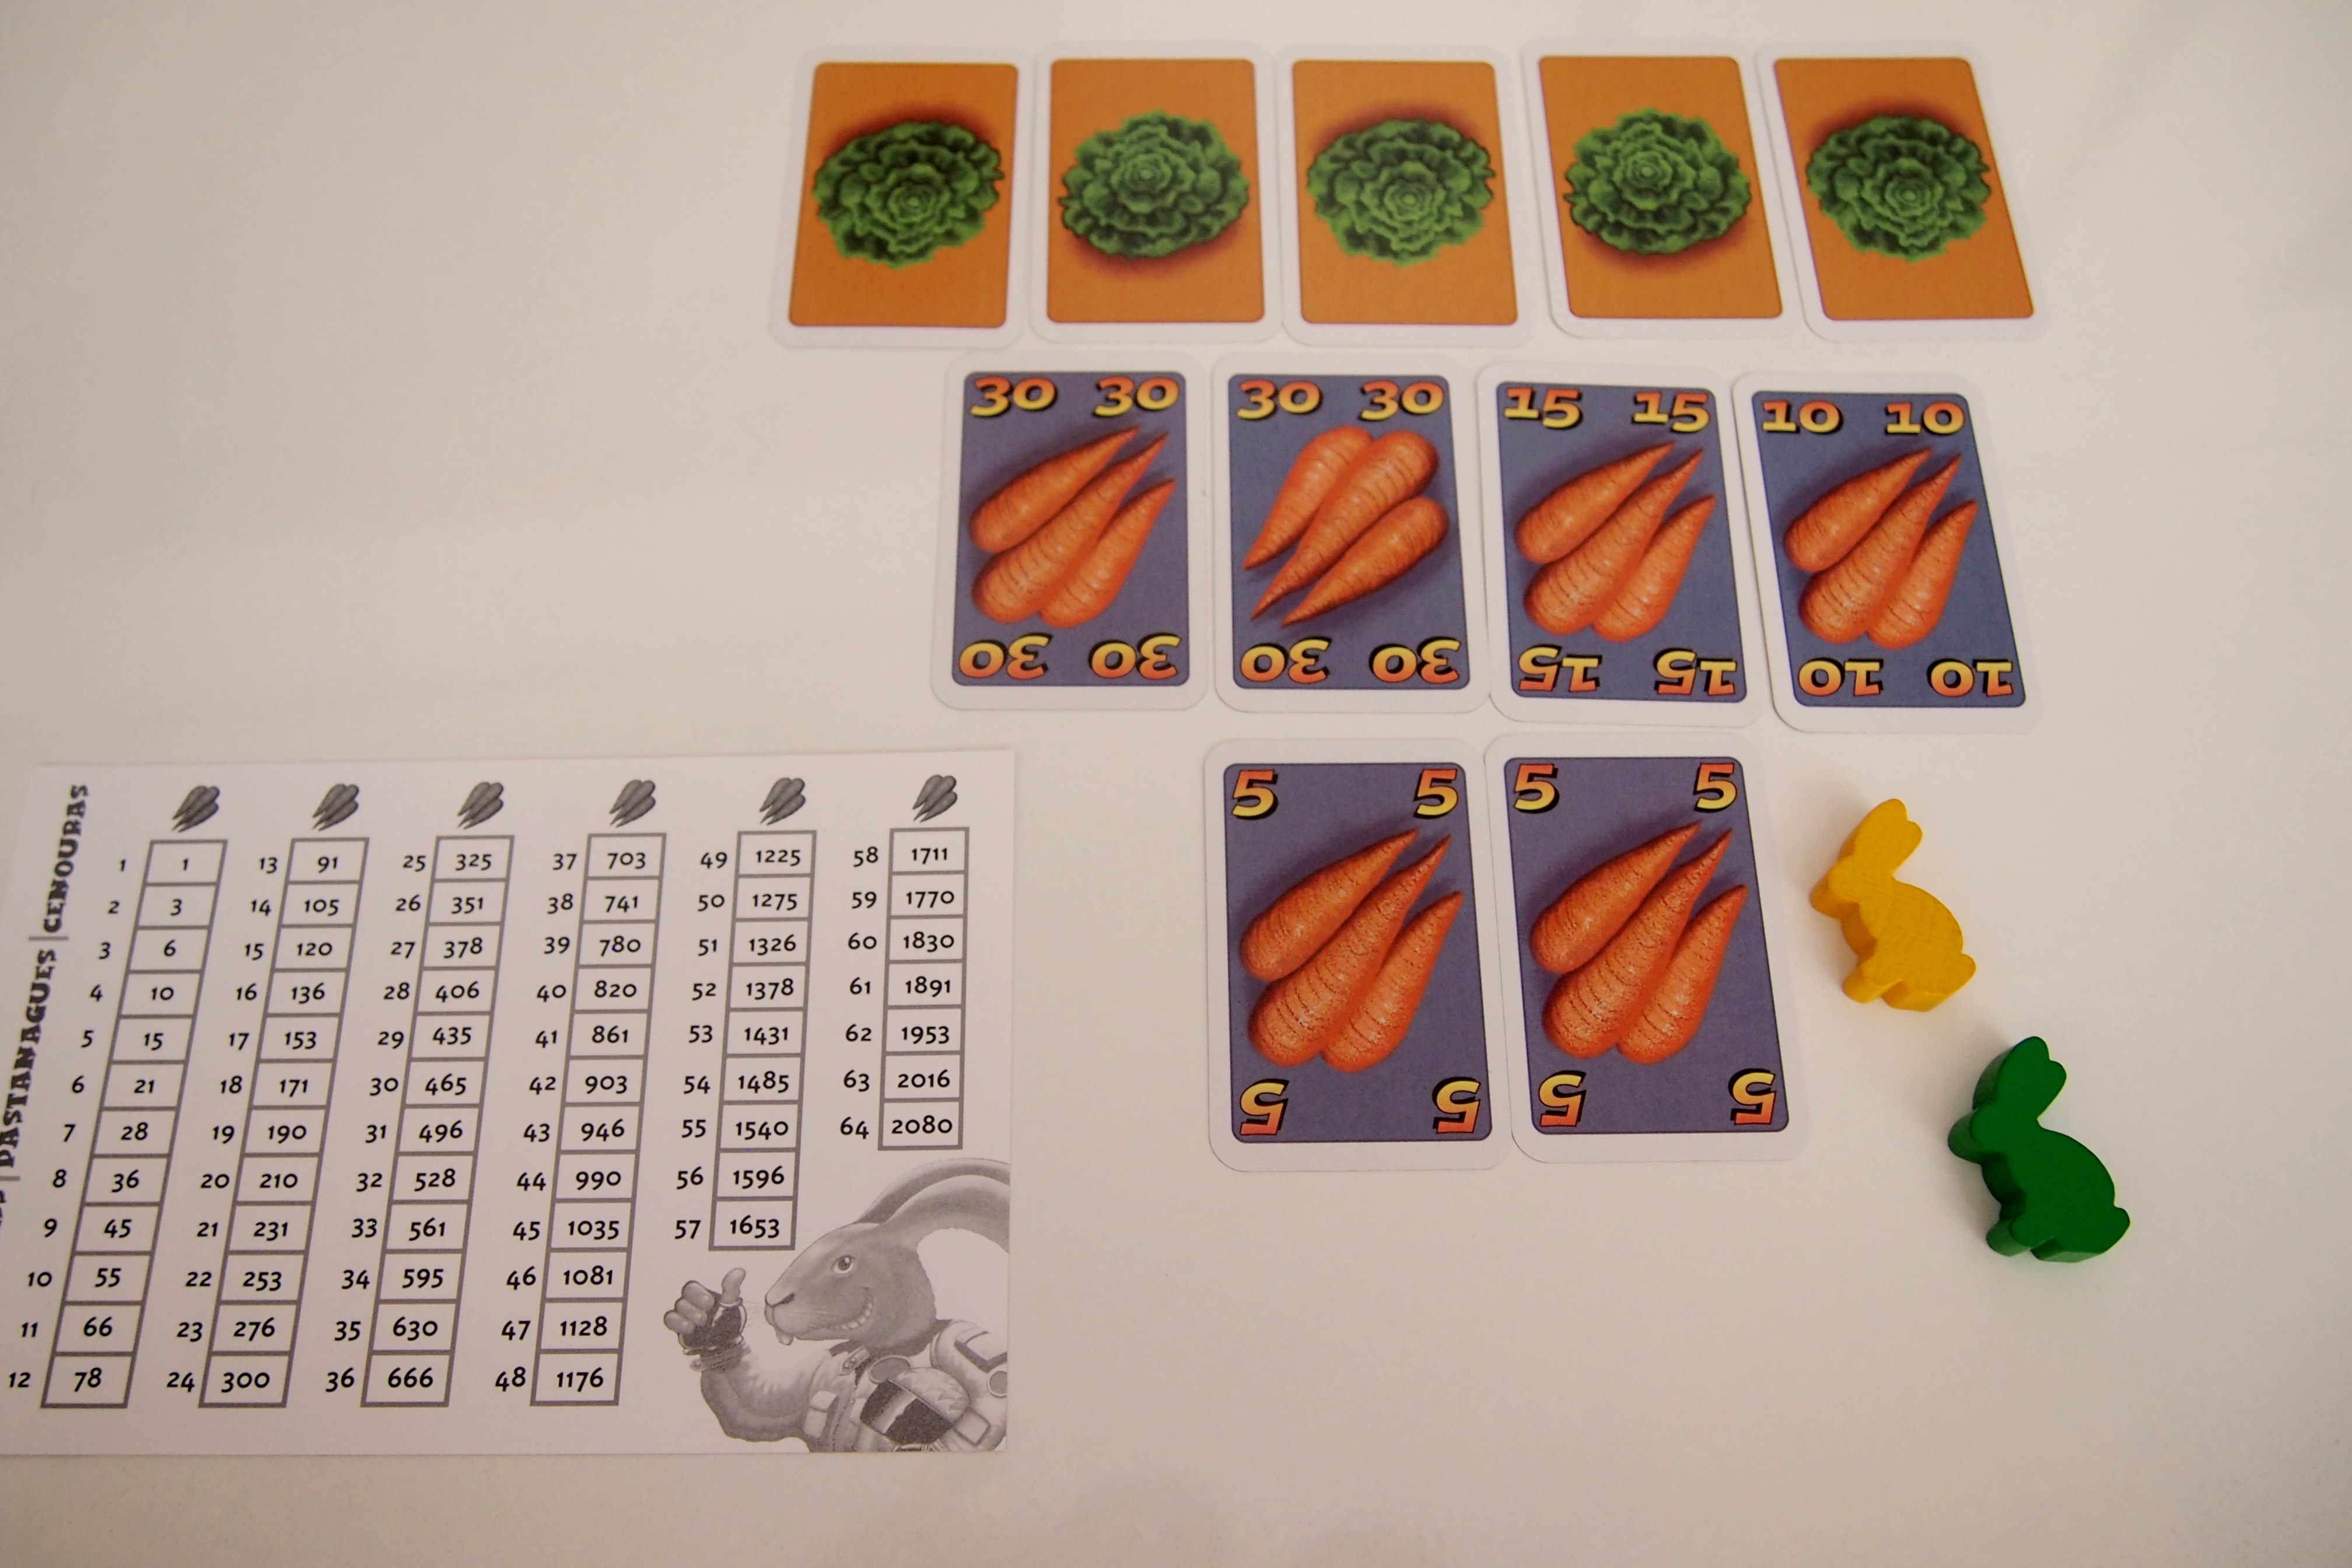 Pack para partidas de dos jugadores: dos liebres, 95 zanahorias, cinco lechugas y una tarjeta de referencia. 